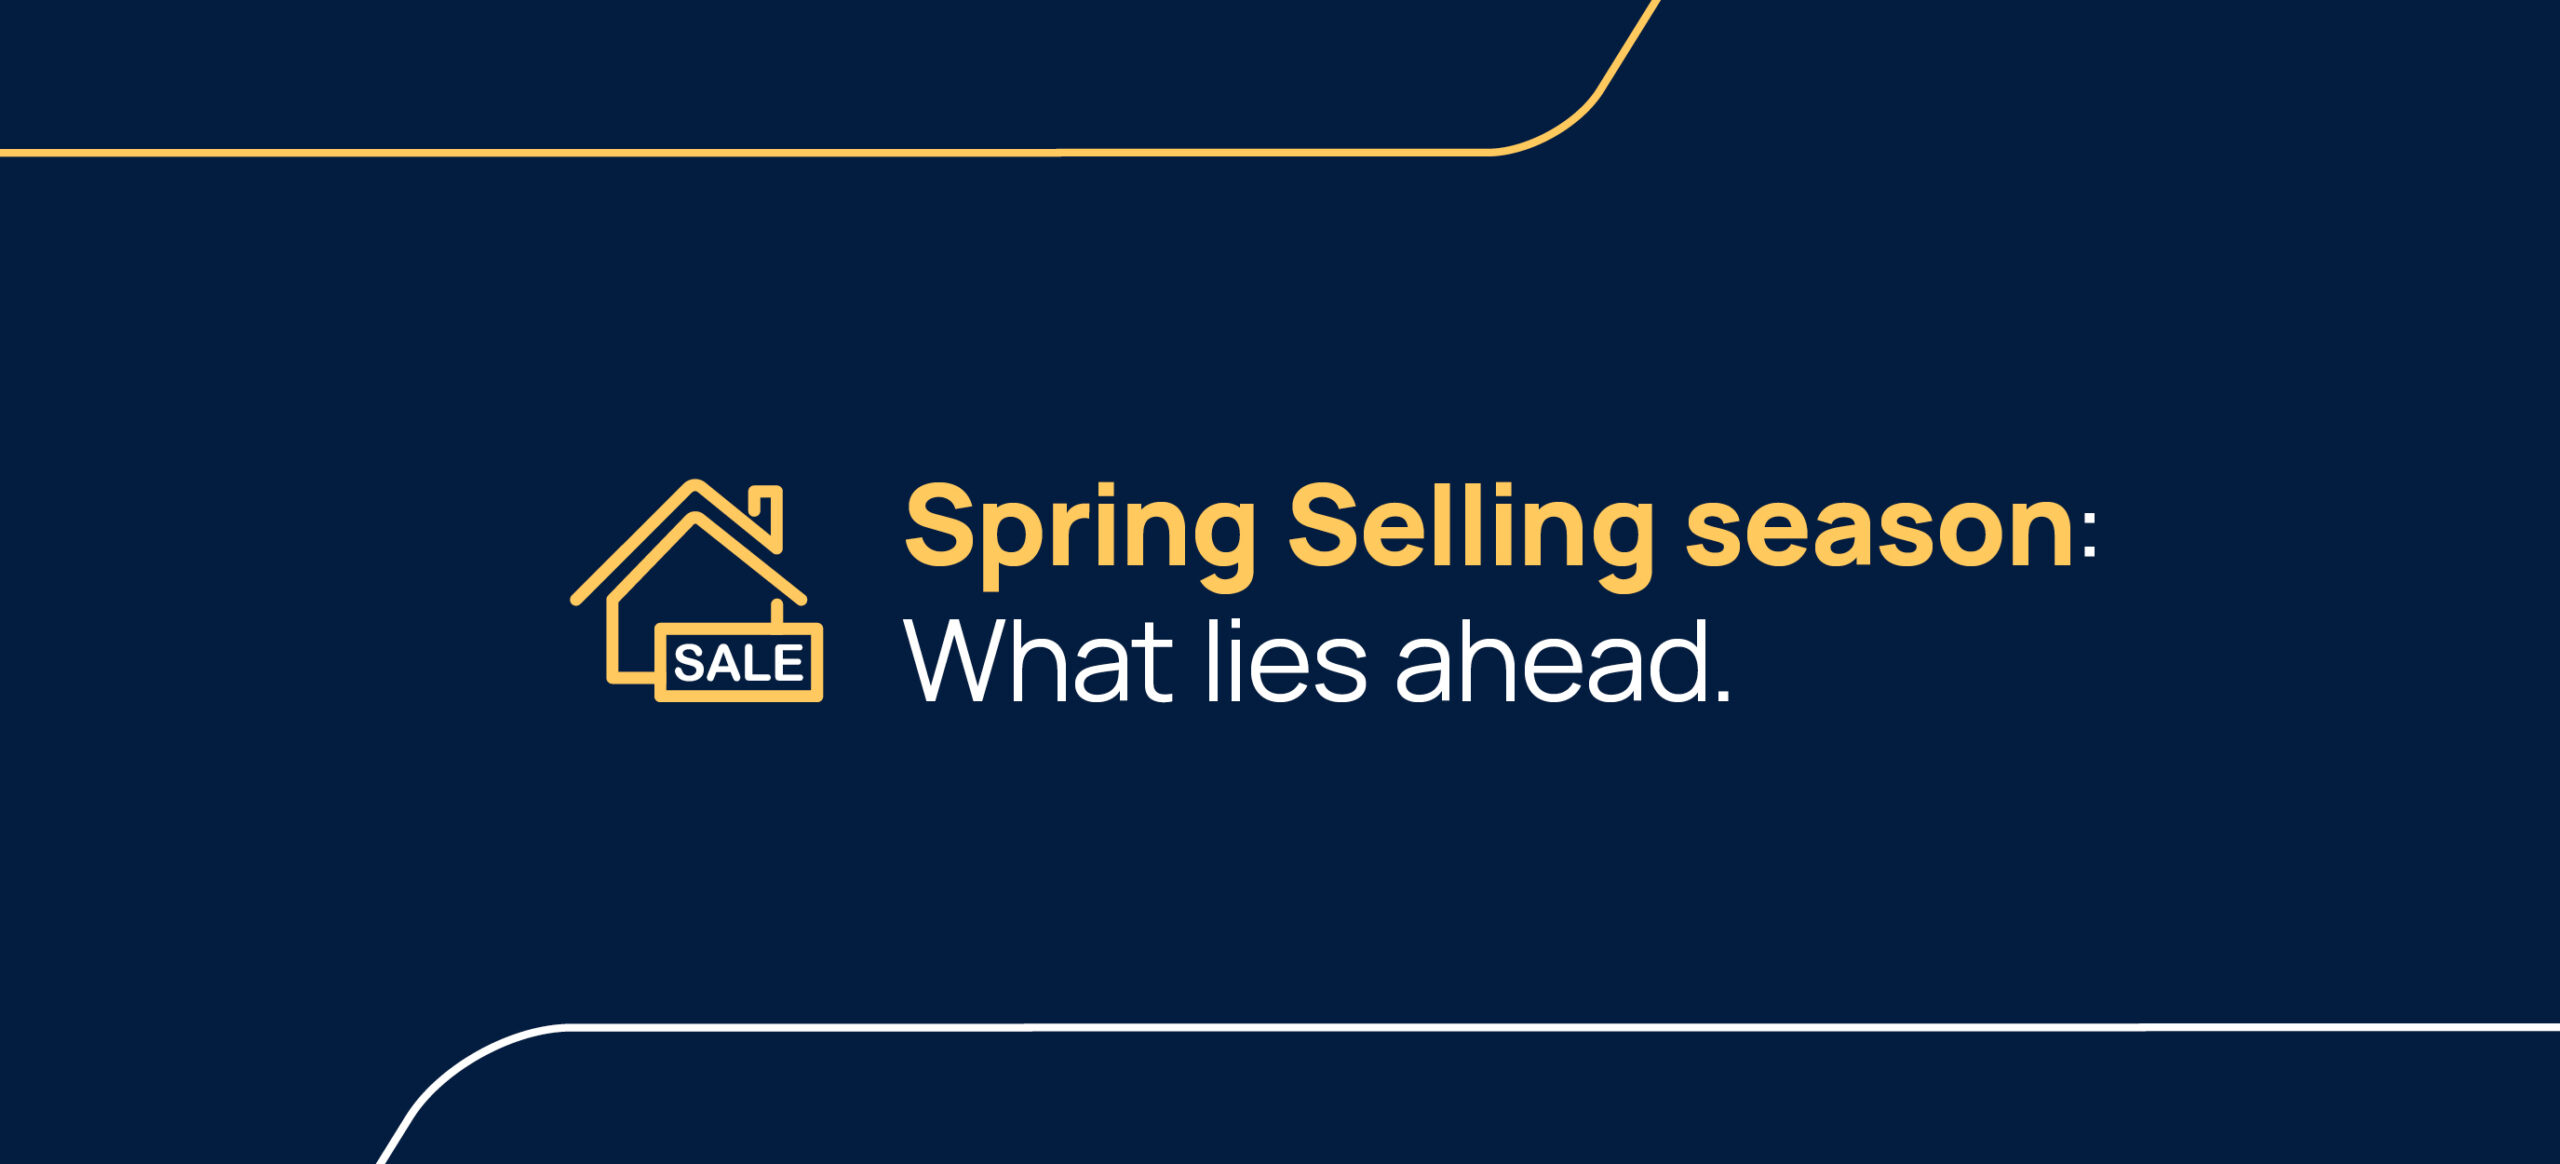 Spring Selling season: What lies ahead.